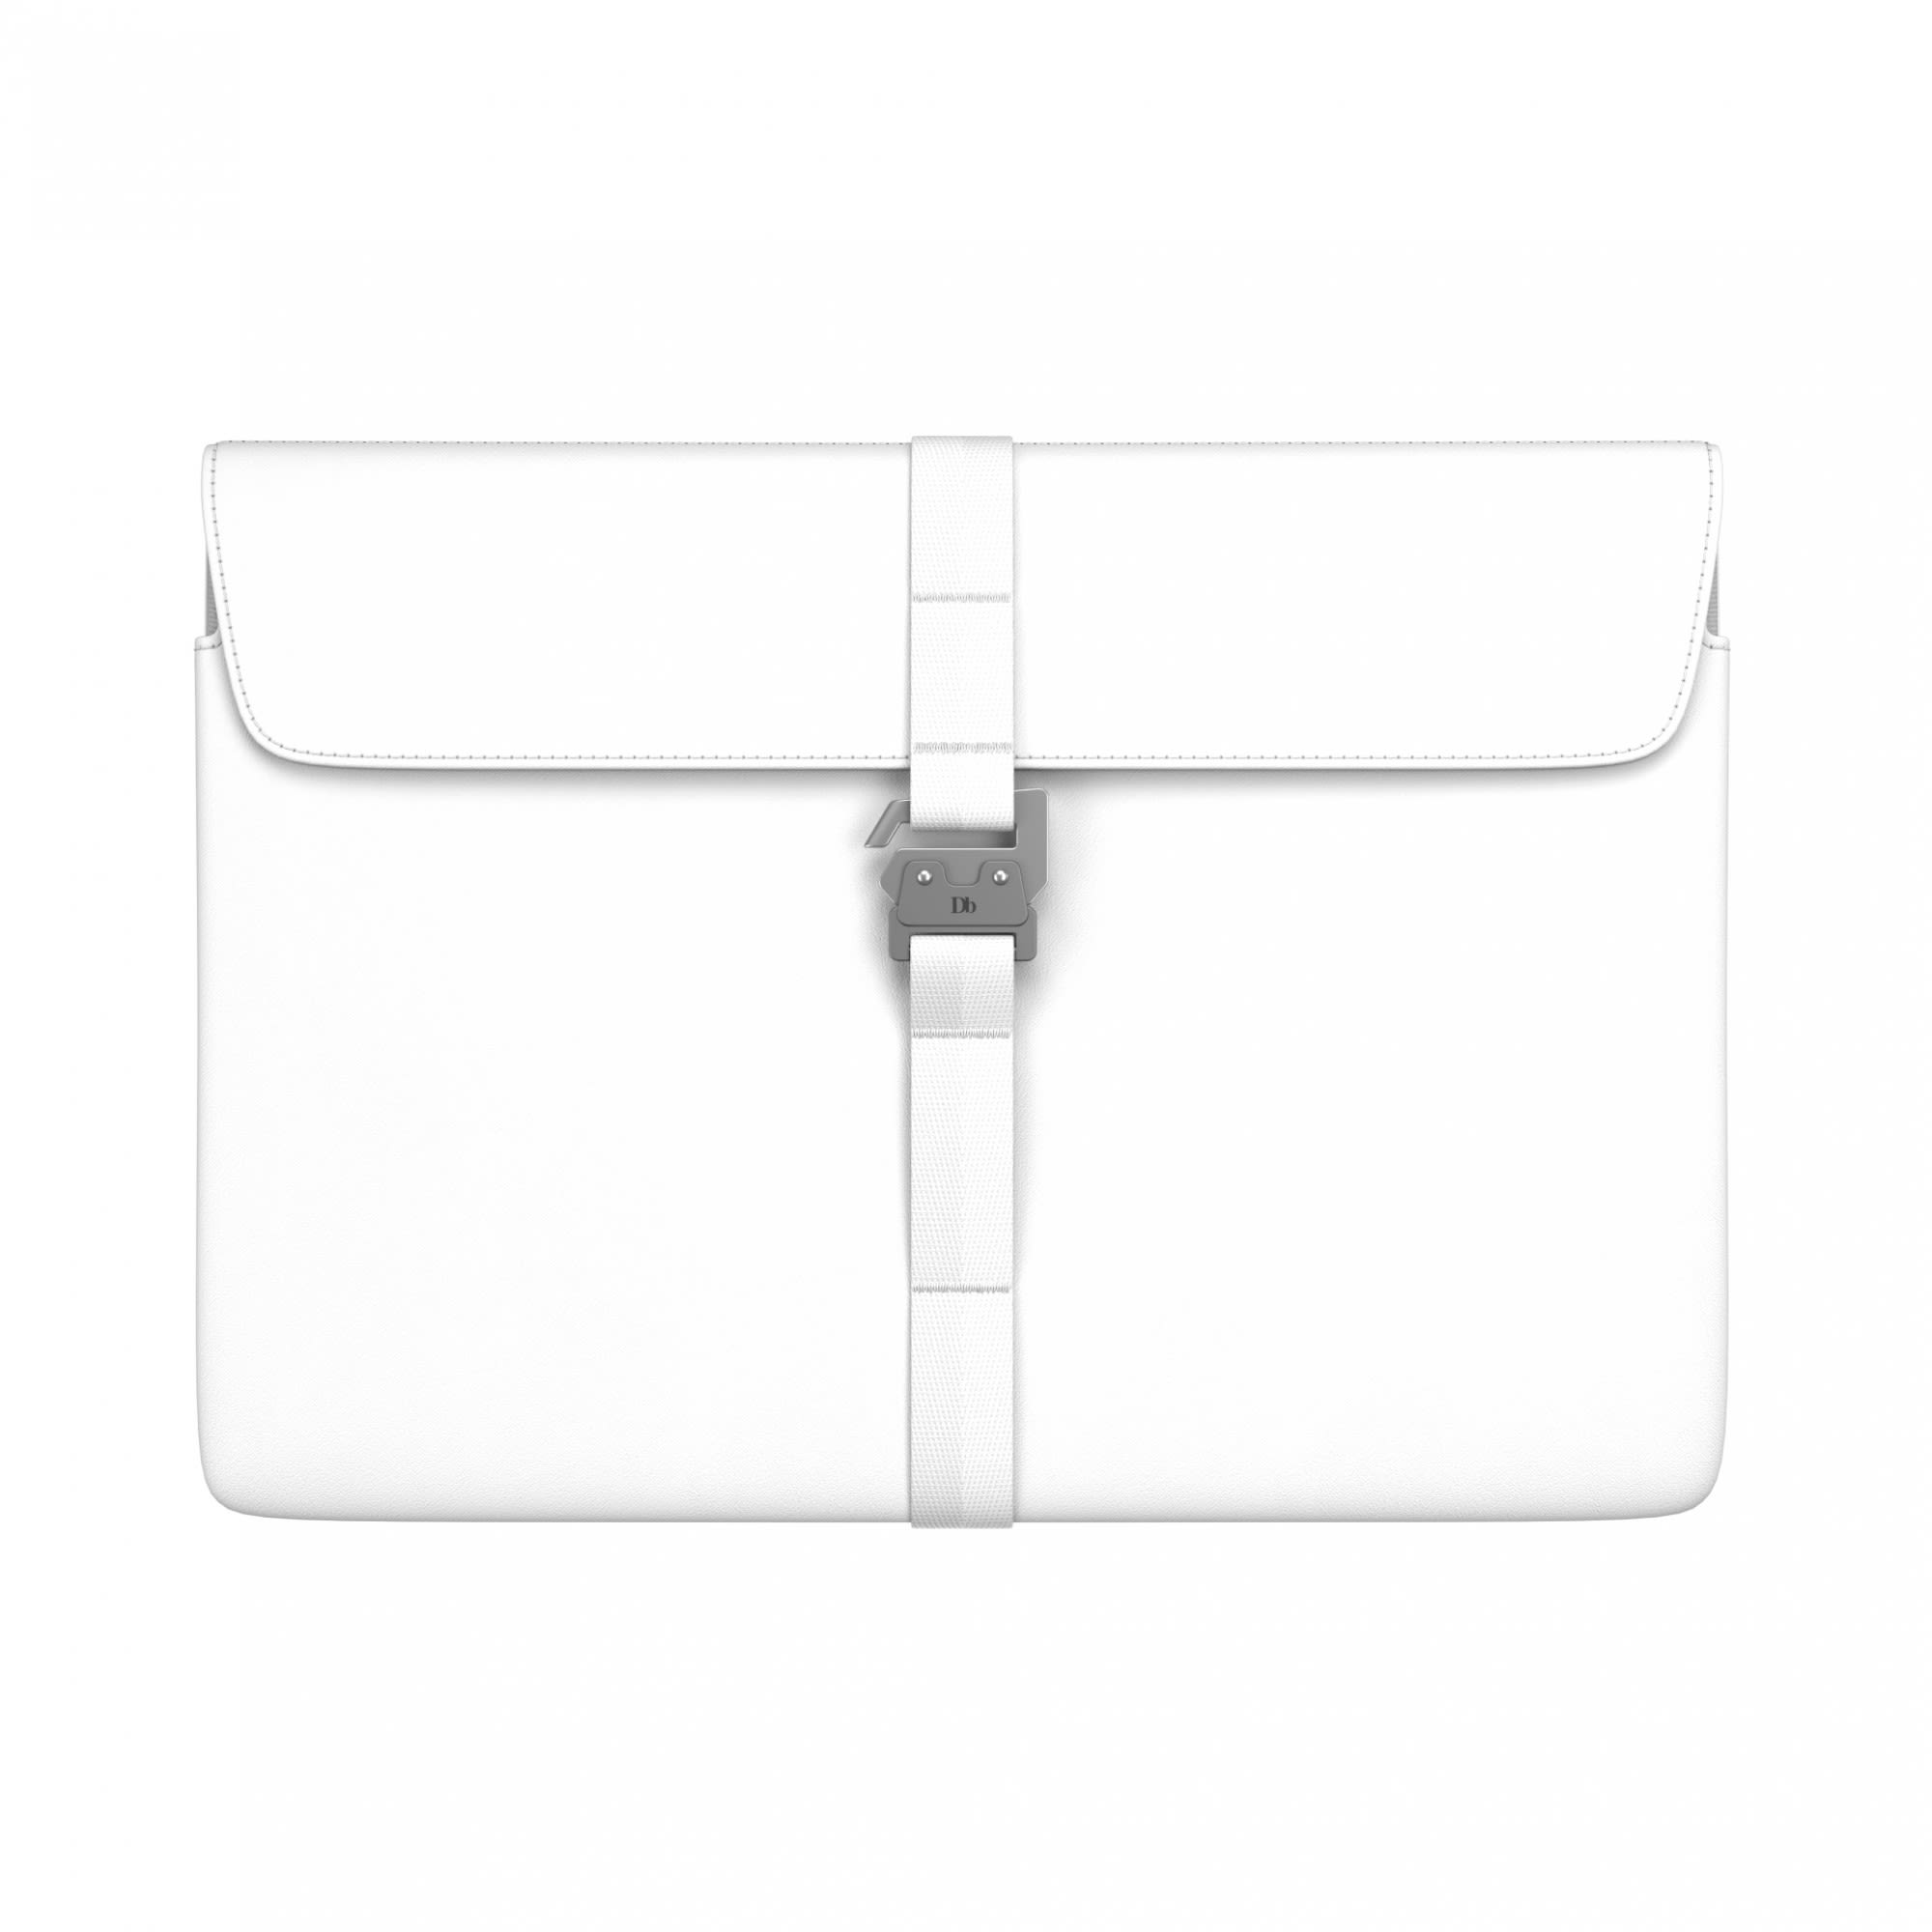 Db THE Vrldsvan Laptop Sleeve II 16- Weiss- Notebooktaschen- Grsse 16- - Farbe Whiteout unter Db